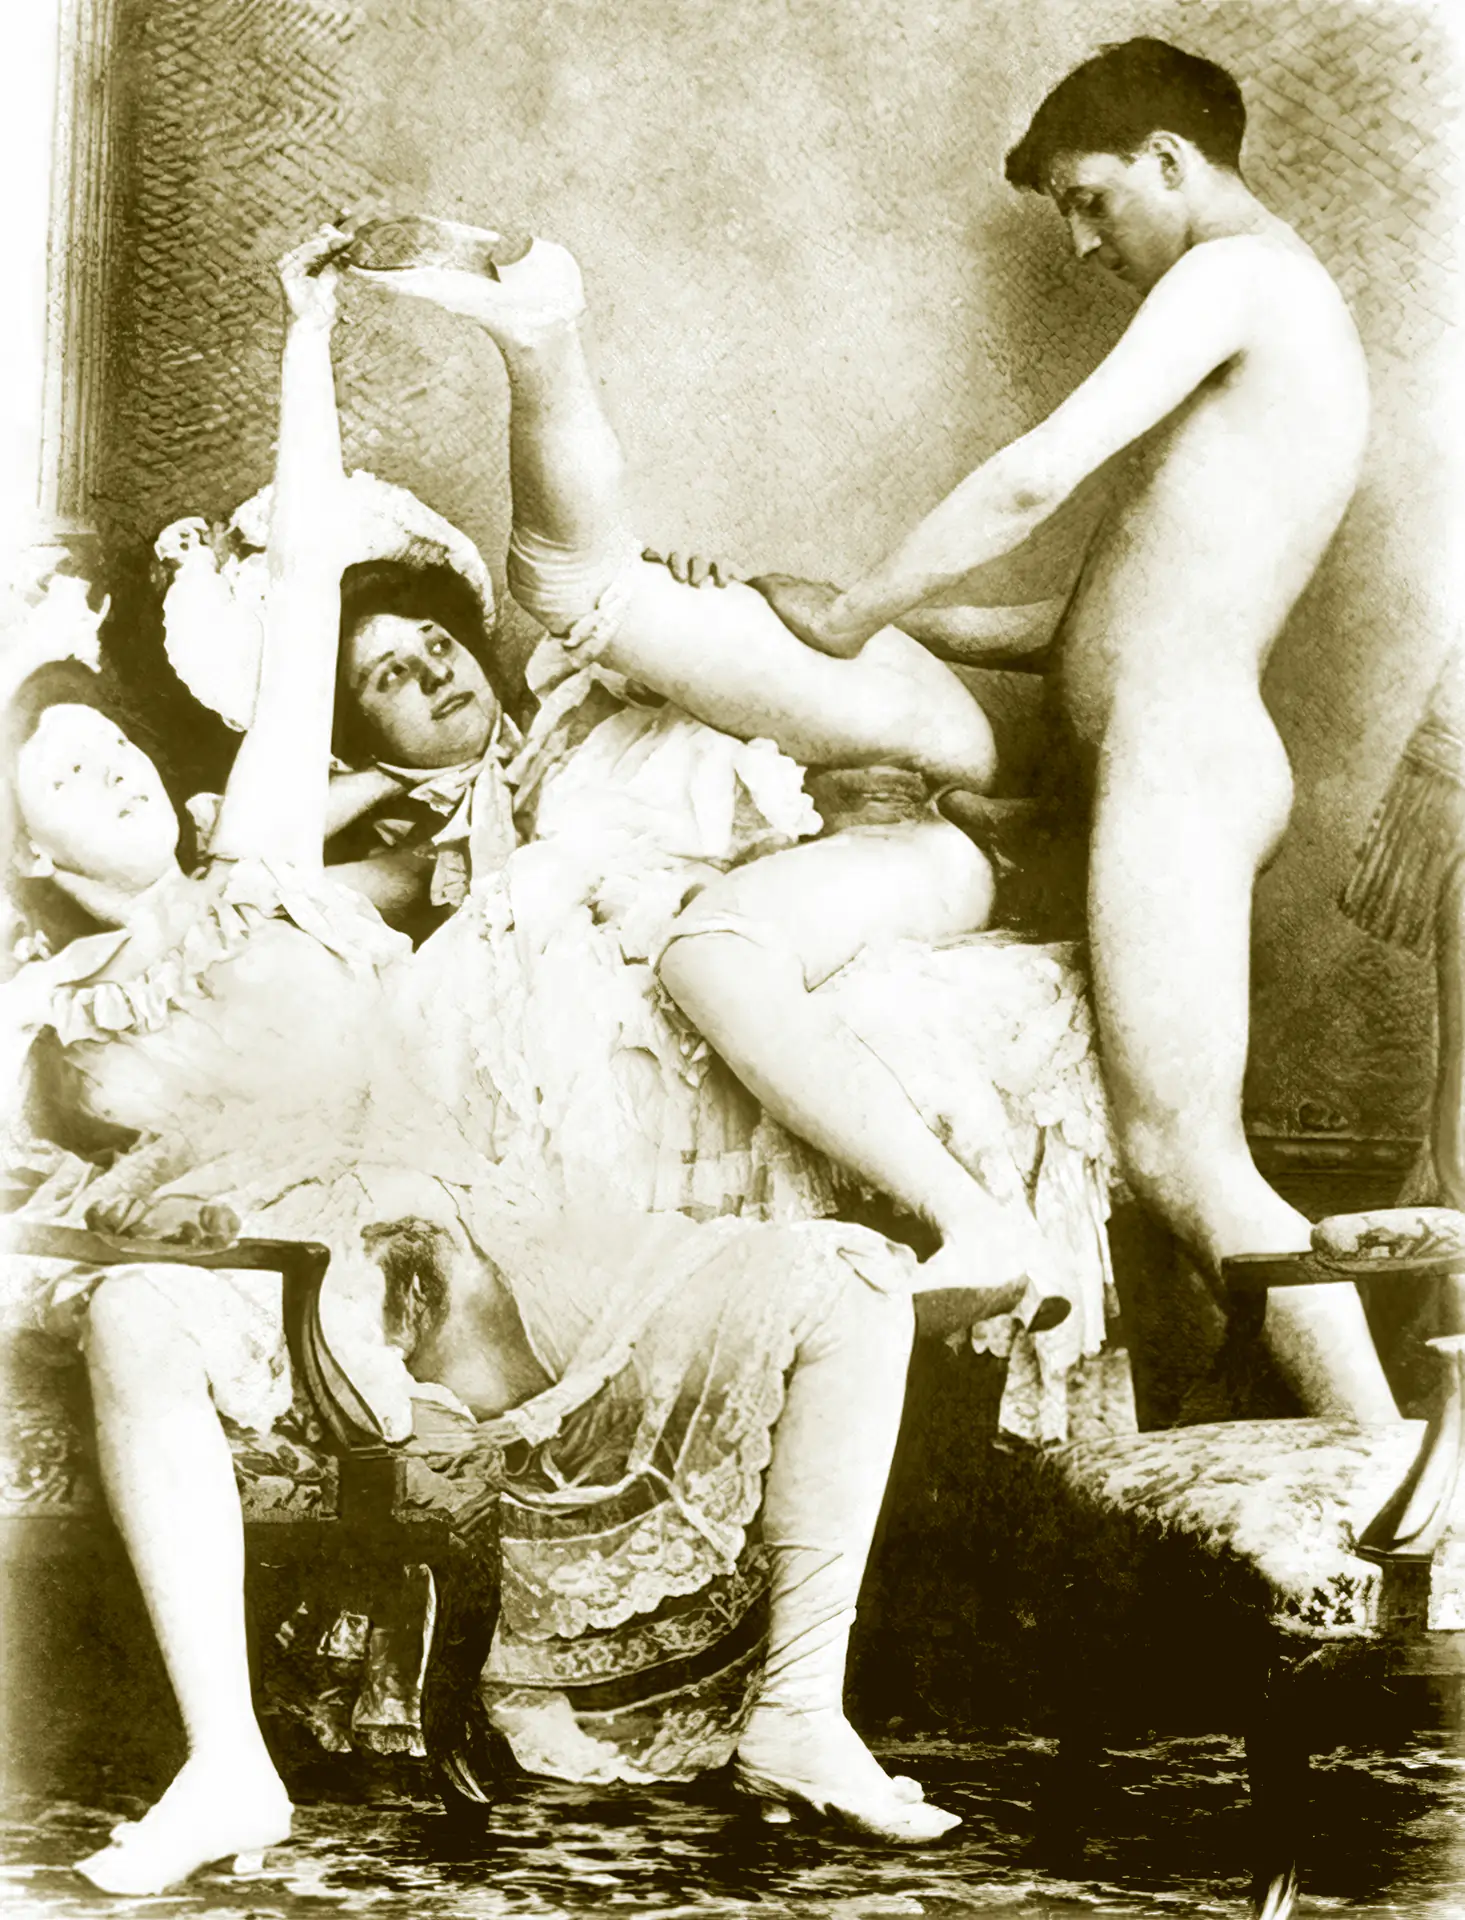 Vintage Photos Et Anal Porn - Vintage Anal Pics: Free Classic Nudes â€” Vintage Cuties